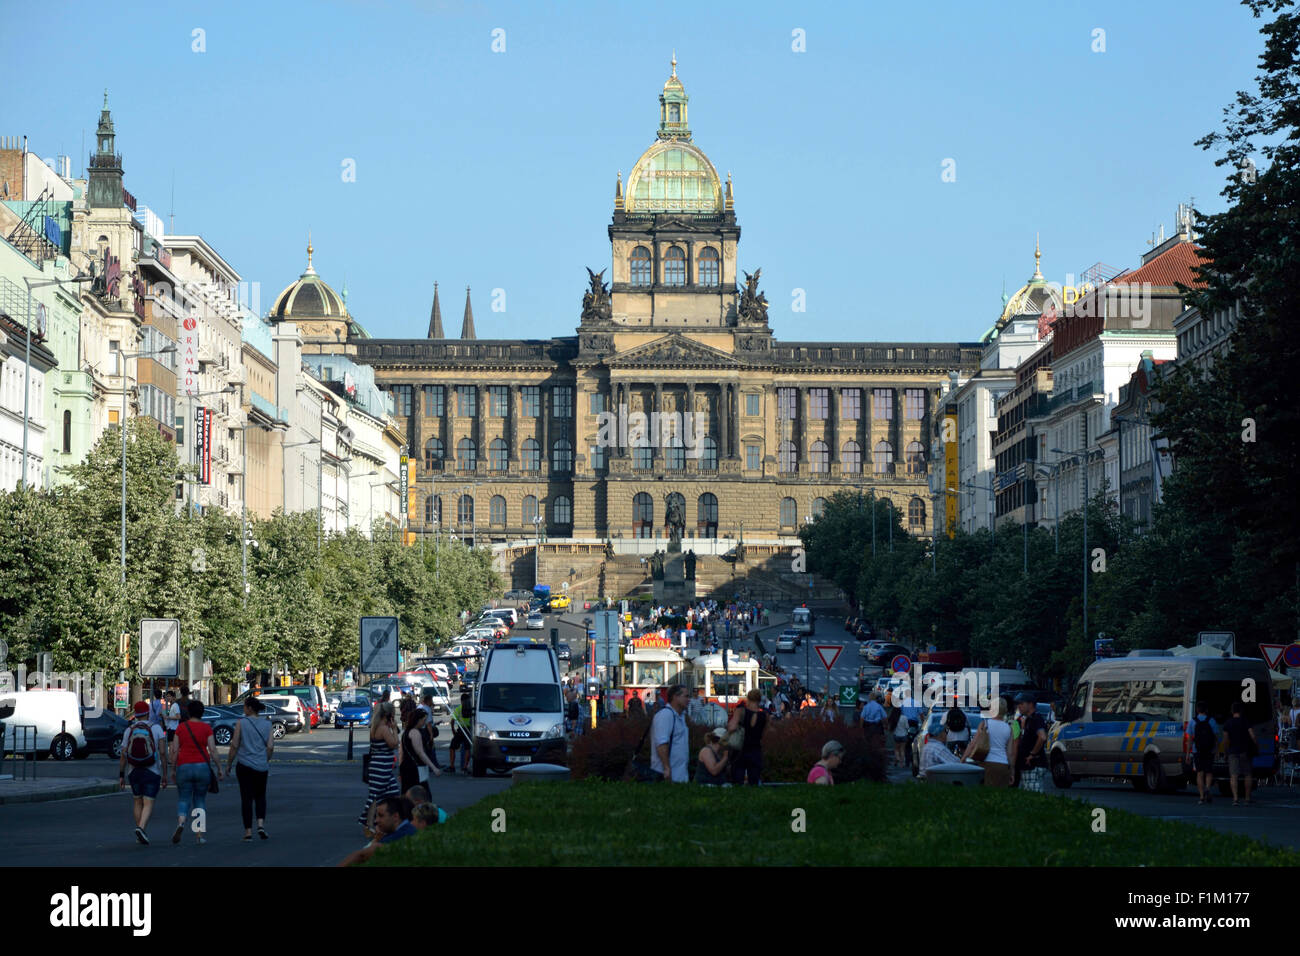 Musée national sur la place Venceslas avec la Place Venceslas, le monument au centre historique de Prague en République tchèque. Banque D'Images